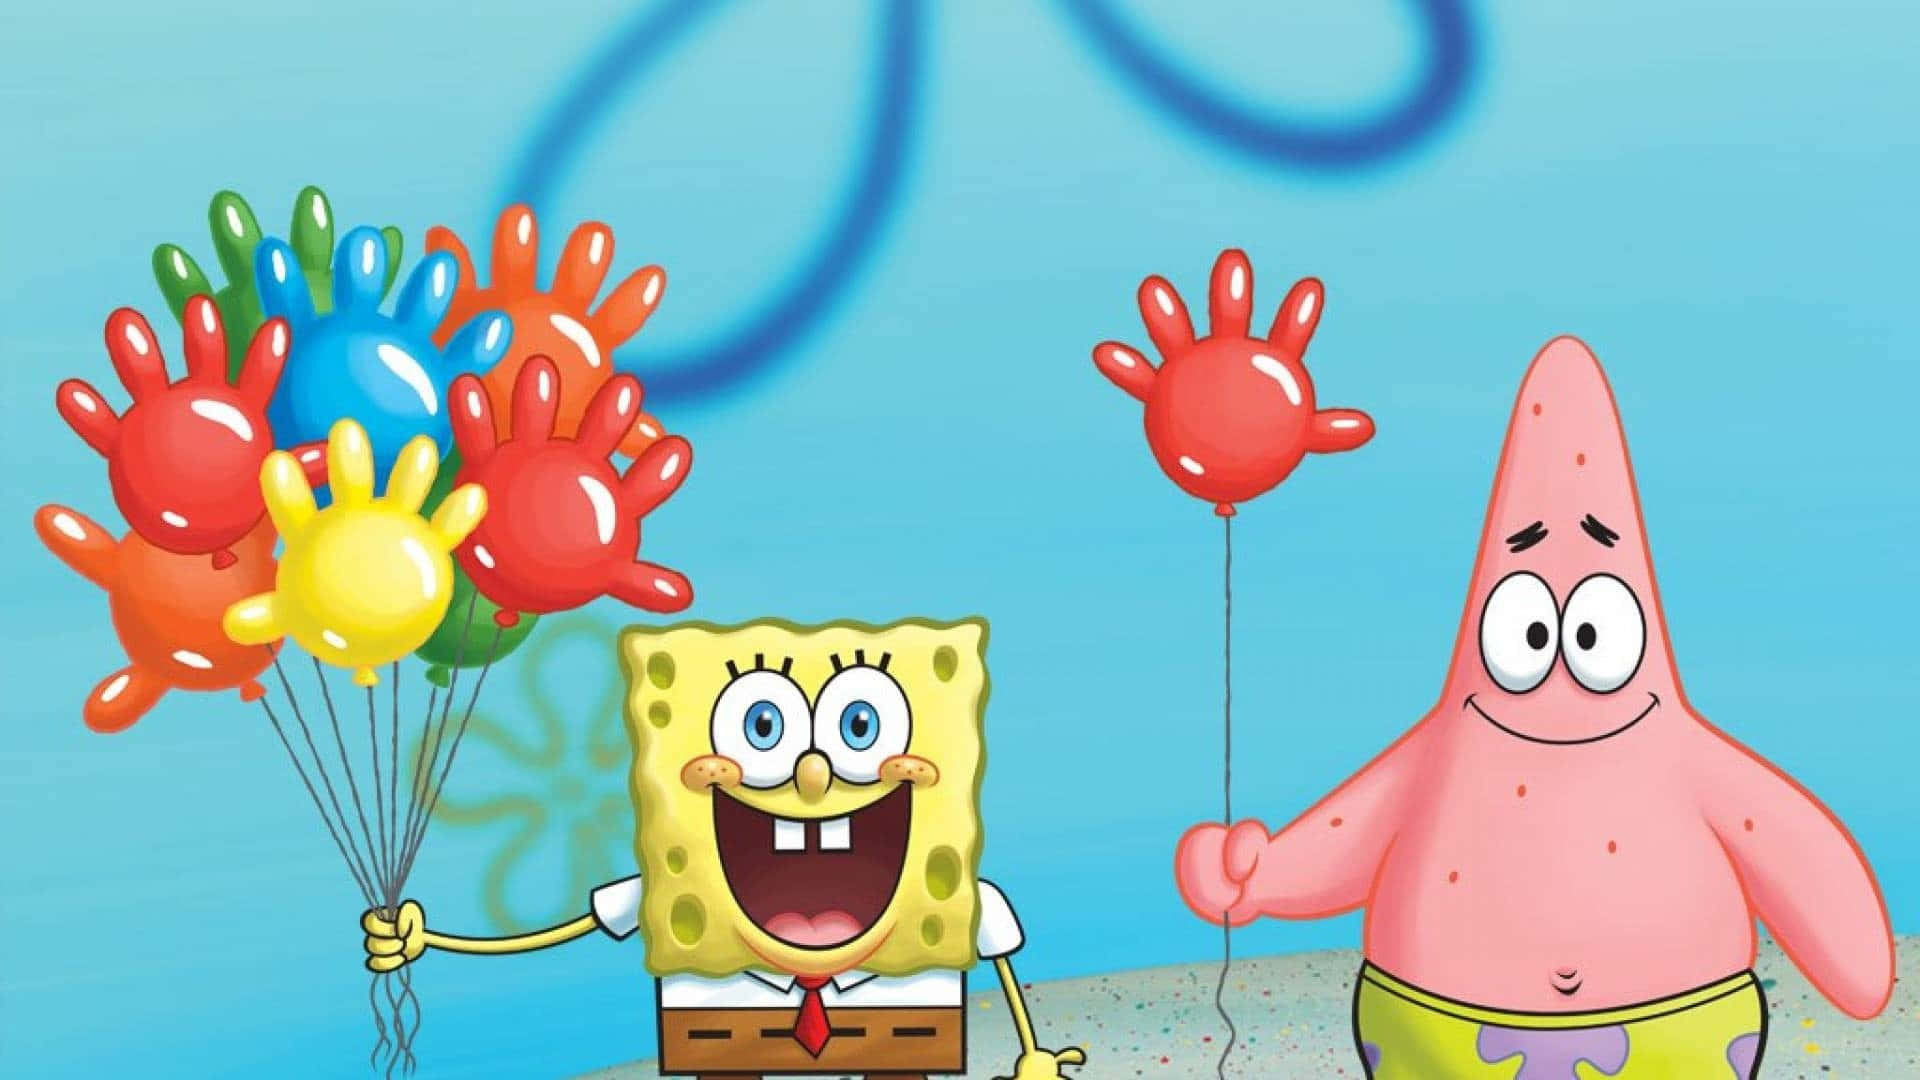 Aesthetic Spongebob Holding Balloons Laptop Wallpaper